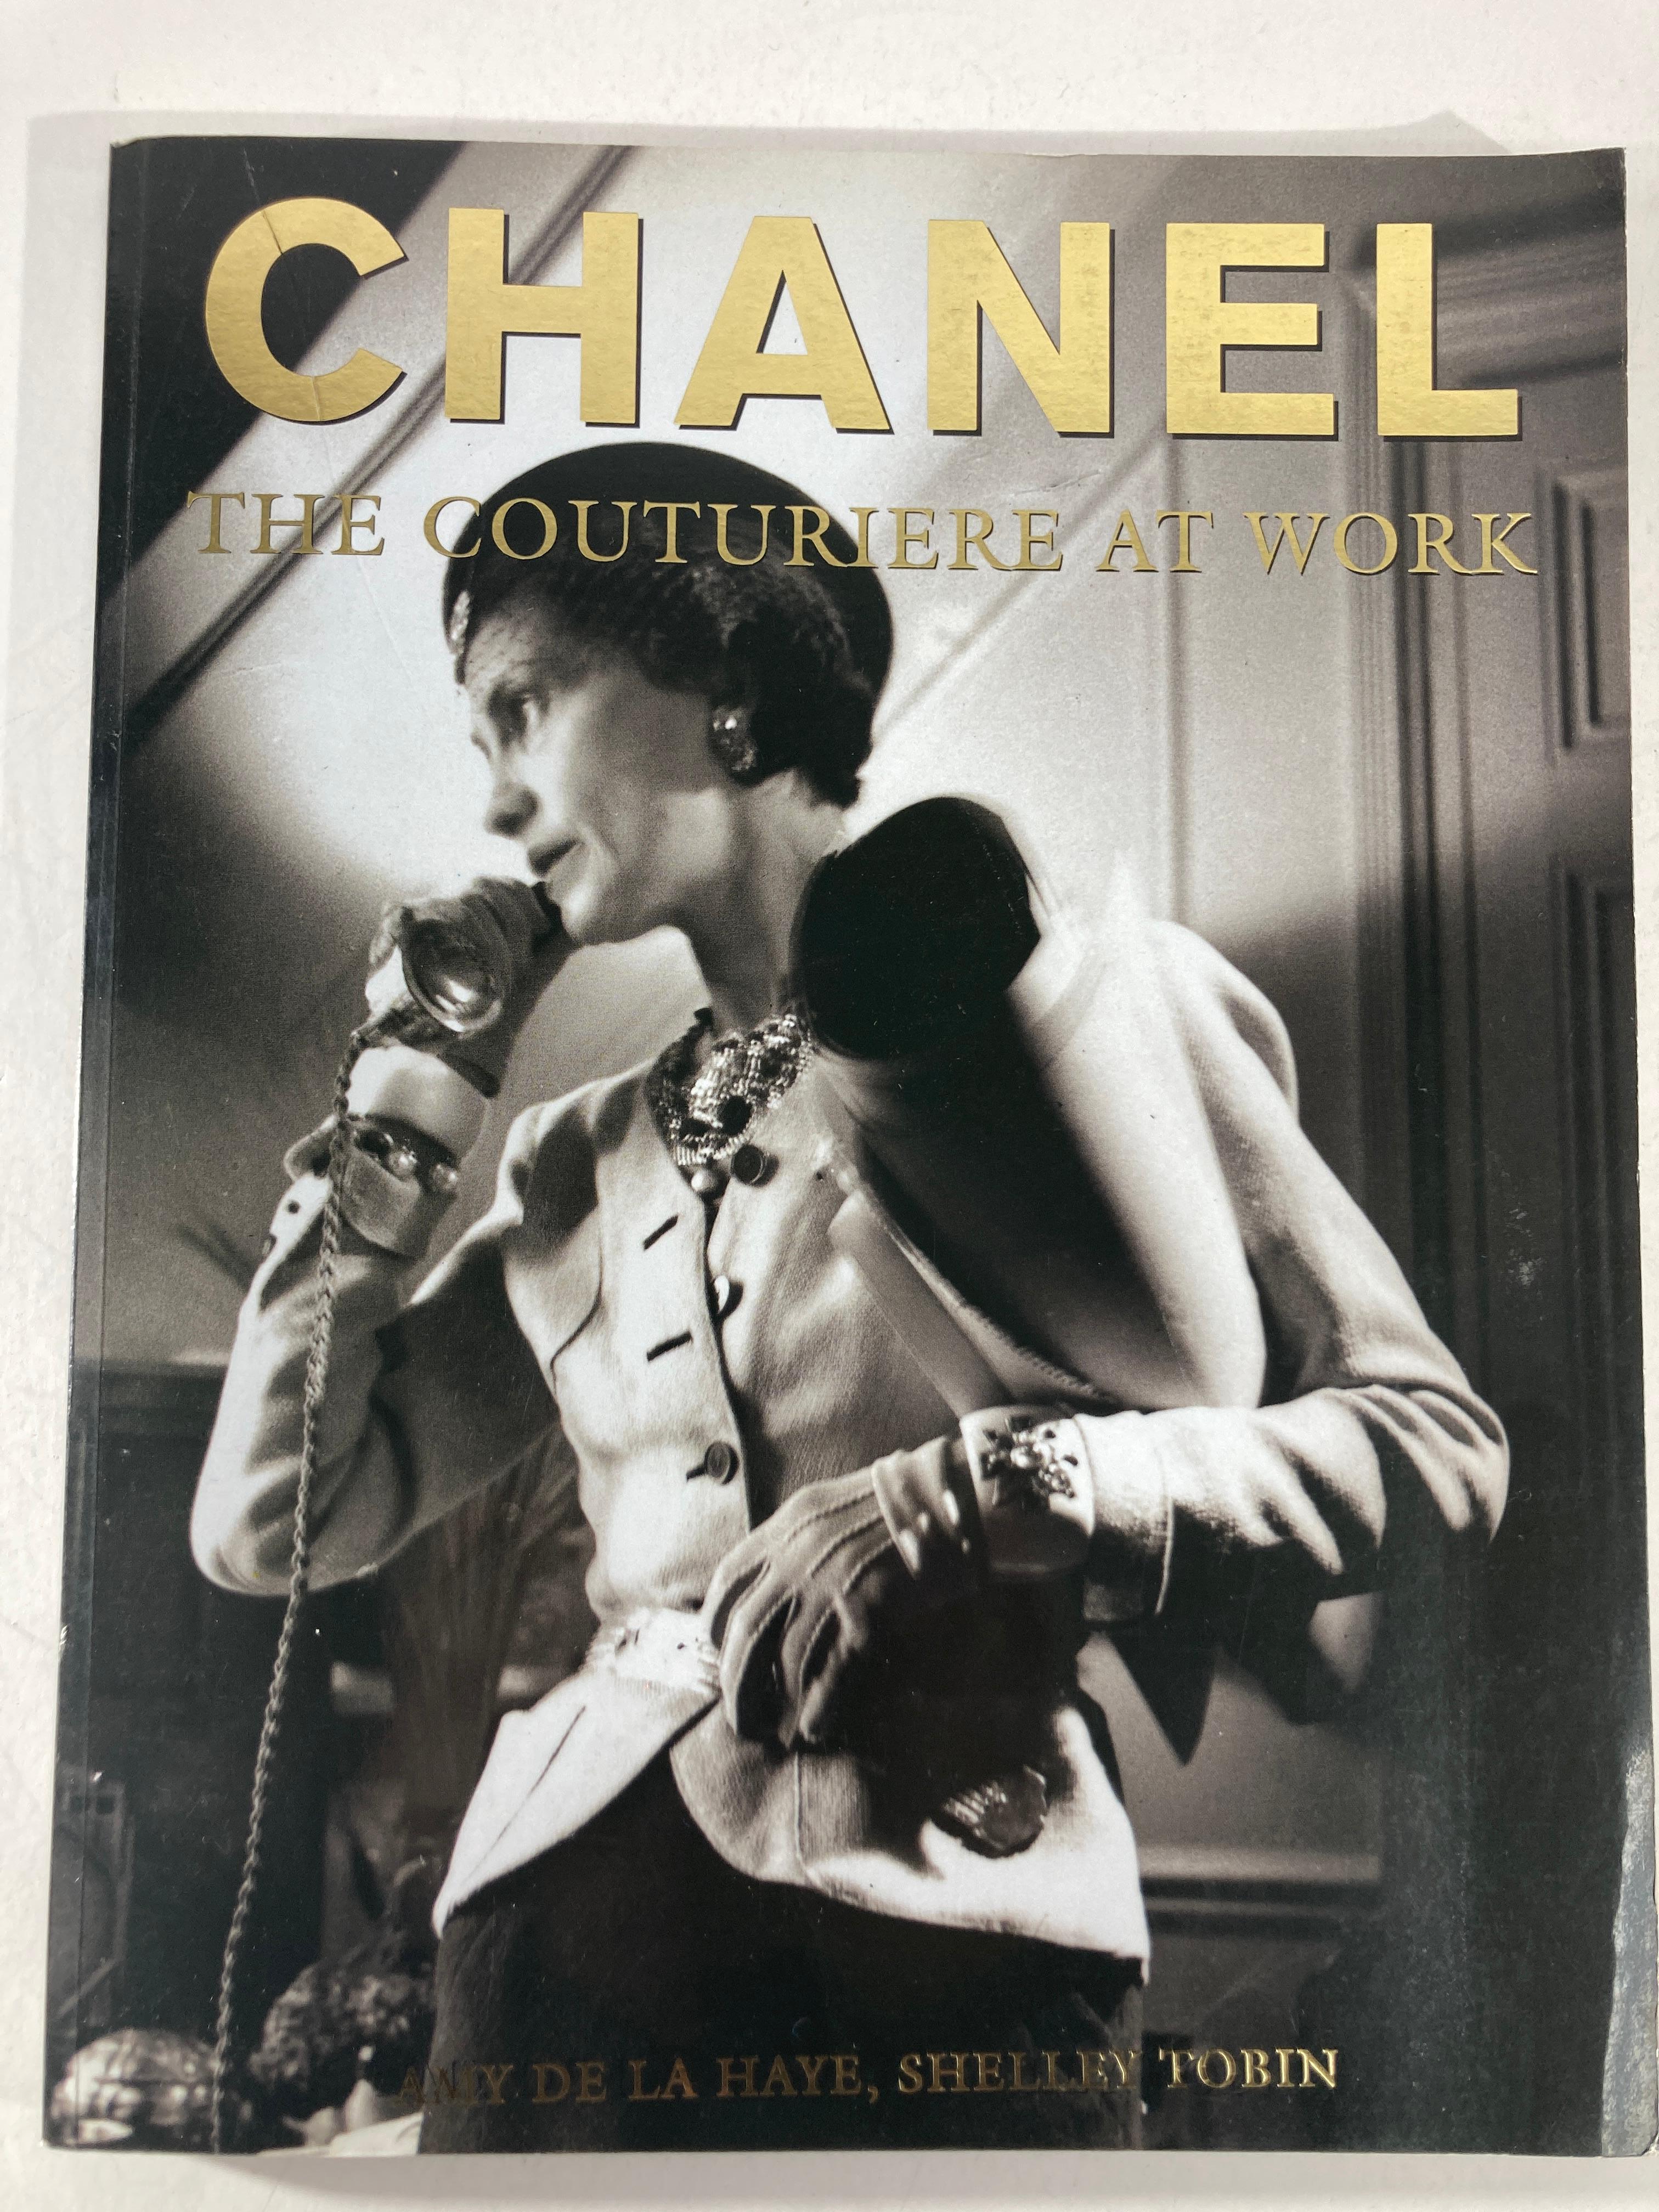 Chanel: Die Couturiere bei der Arbeit von Amy De la Haye, Shelley Tobin.
Veröffentlicht von Woodstock, N. Y. The Overlook Press, 1994
Victoria & Albert Museum, 1996 - Kostümdesign - 136 Seiten.
Mode ist nicht etwas, das nur in Kleidern existiert;